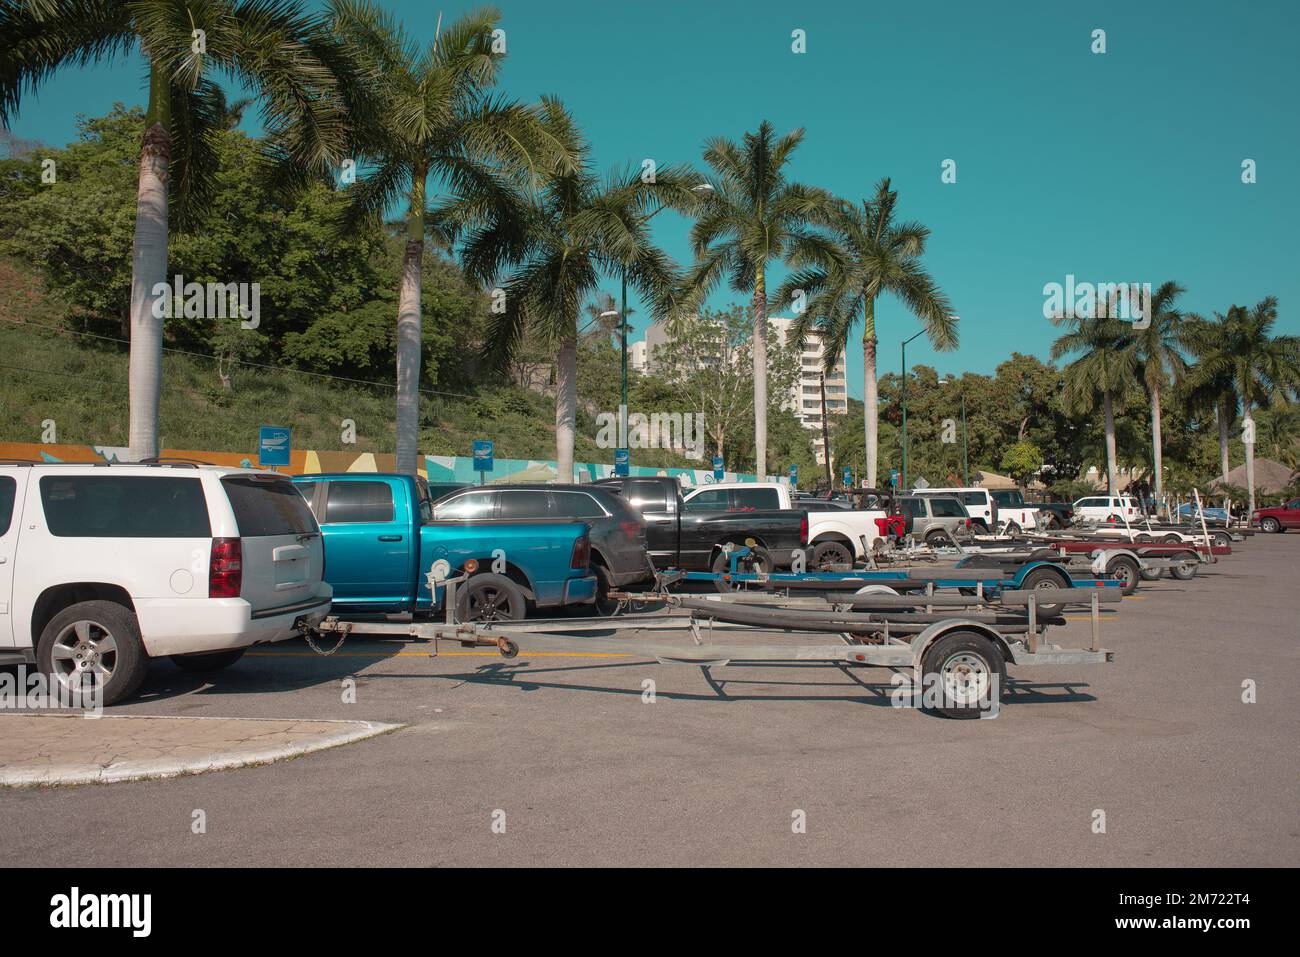 remorque-bateau parking camion plein de véhicules pendant une journée d'été sans personne, palmiers en arrière-plan, ciel bleu Banque D'Images